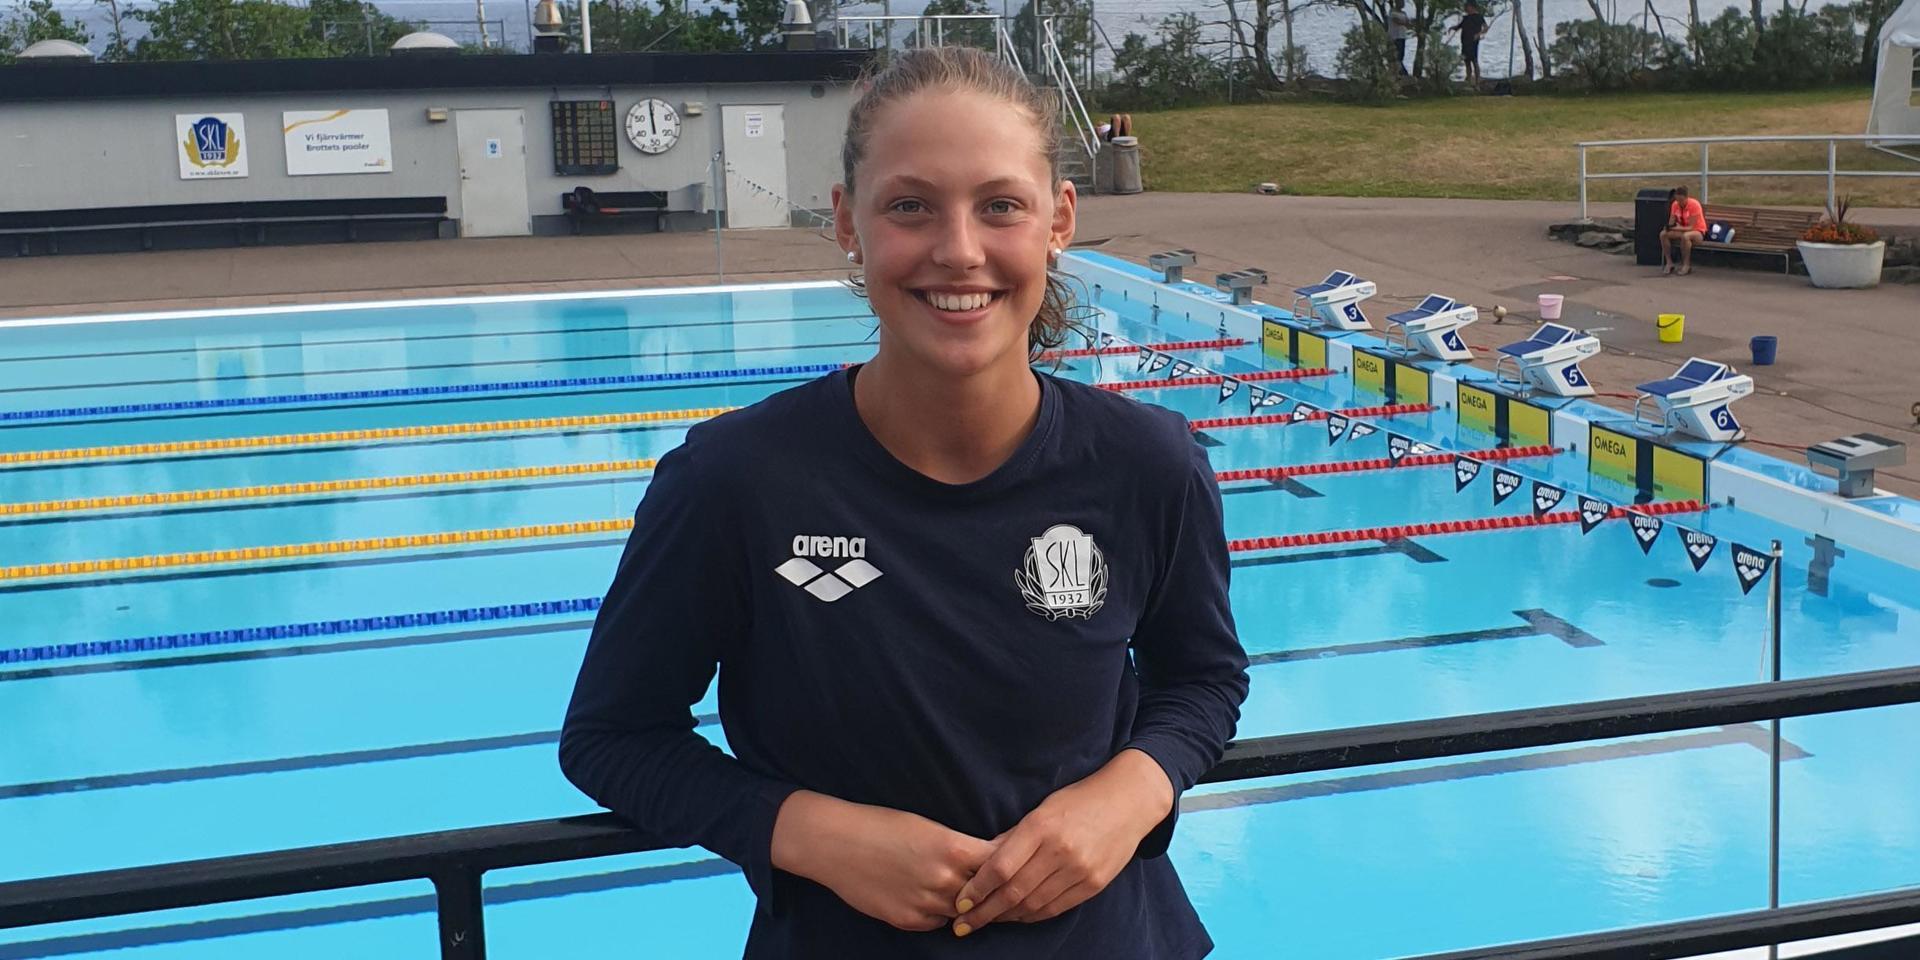 Laxens Moa Bergdahl simmade 100 meter bröst på 1.09,99, vilket är den elfte snabbaste tiden någonsin på distansen i Sverige.